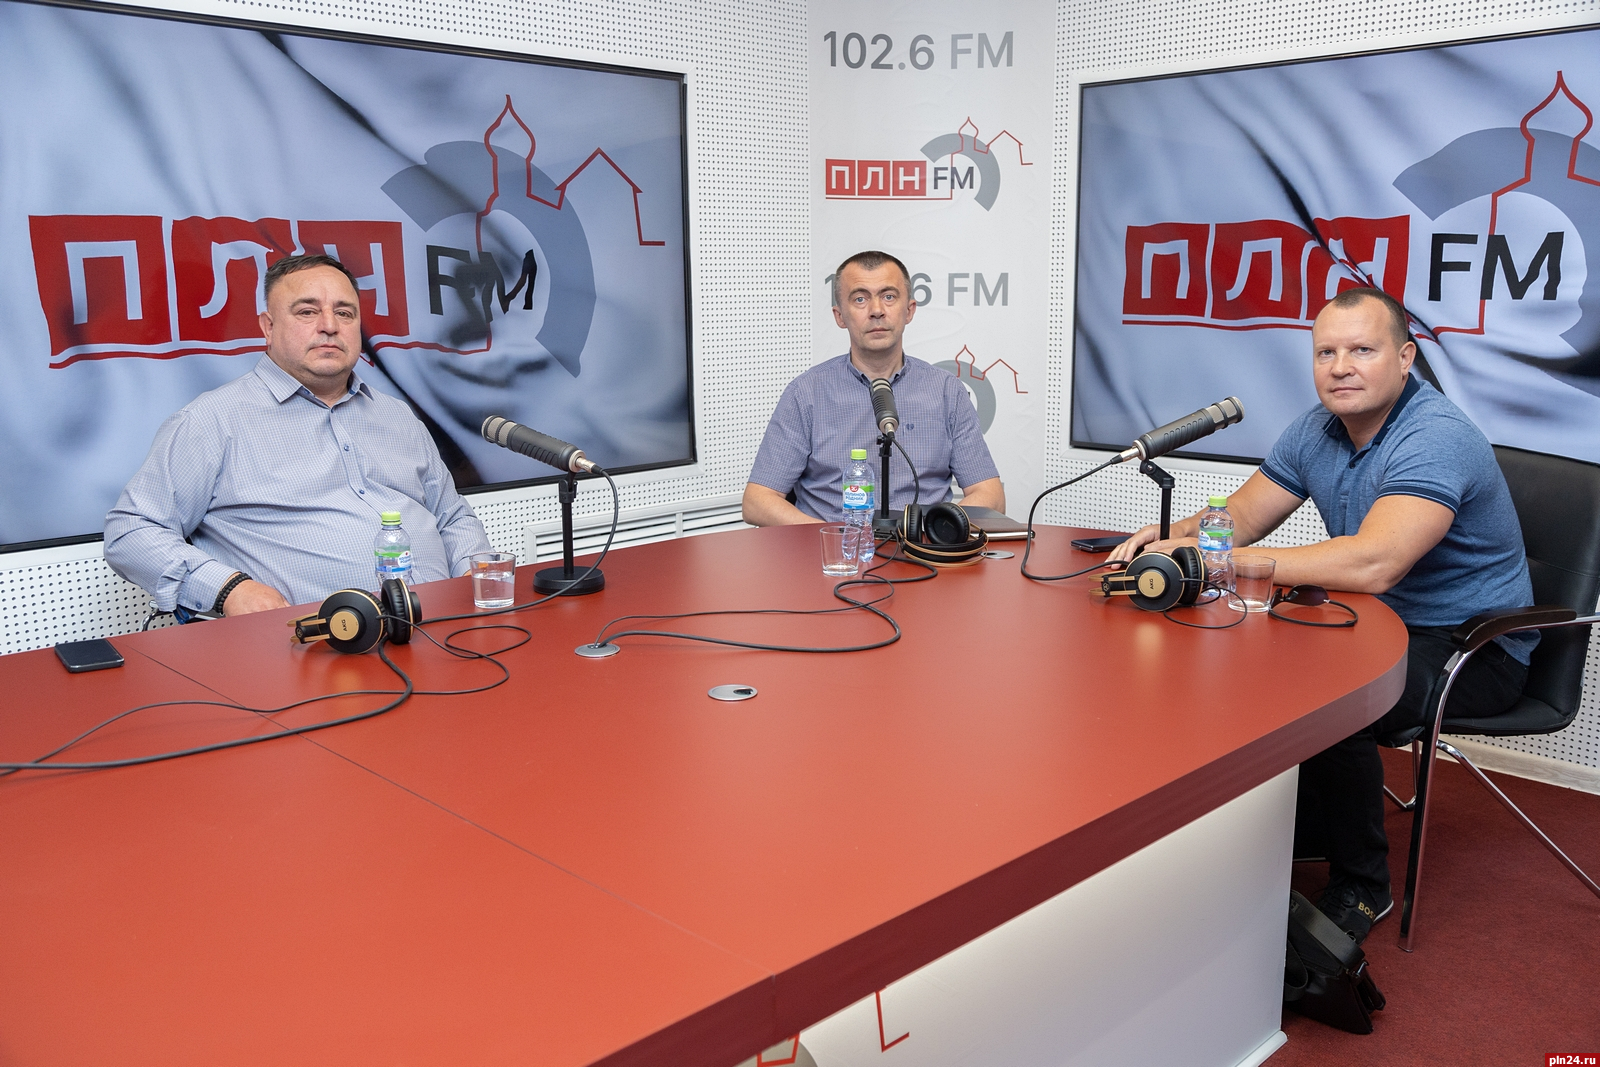 «В чем правда, брат?»: Алексей Севастьянов и Олег Брячак схлестнулись в «Армрестлинге» на «ПЛН FM»